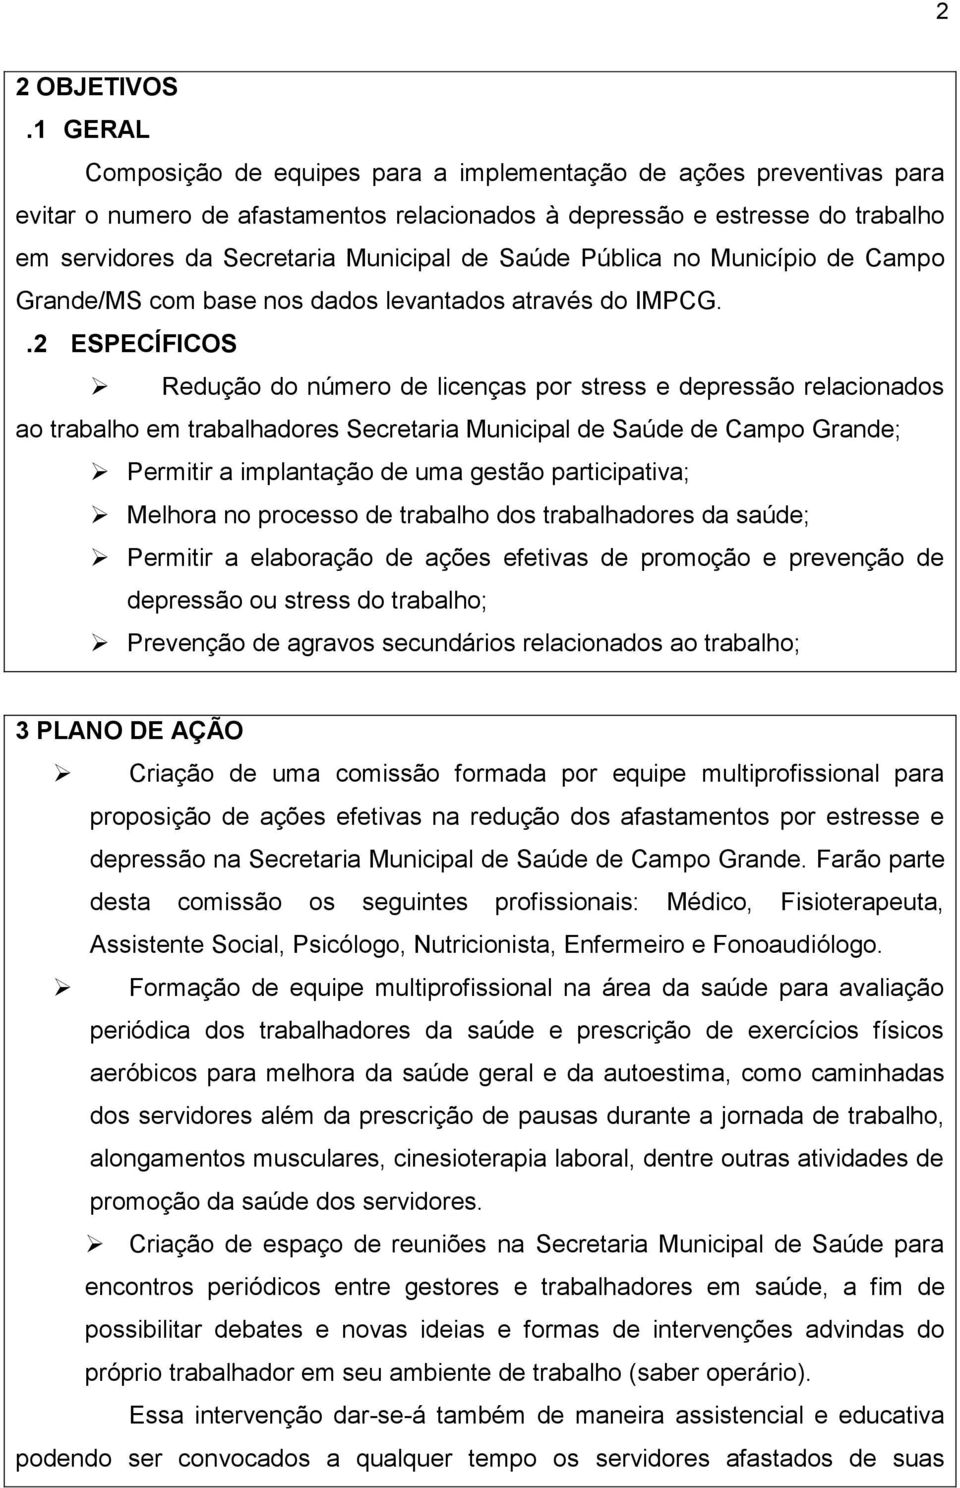 Saúde Pública no Município de Campo Grande/MS com base nos dados levantados através do IMPCG.